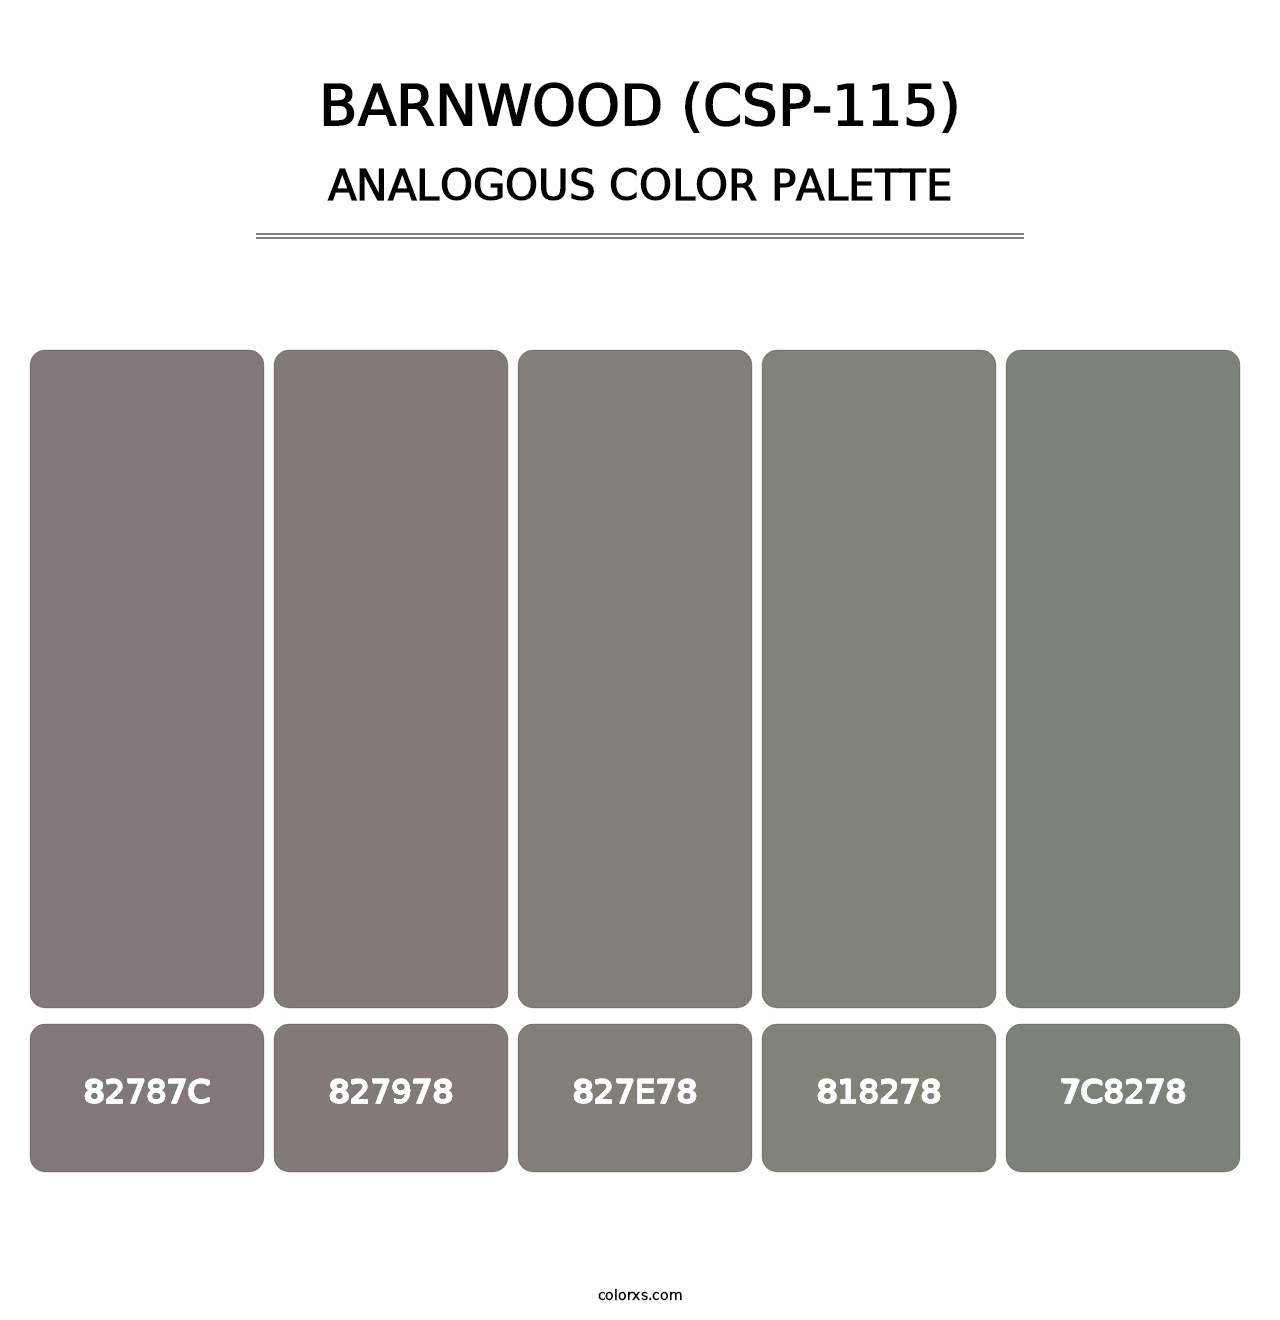 Barnwood (CSP-115) - Analogous Color Palette